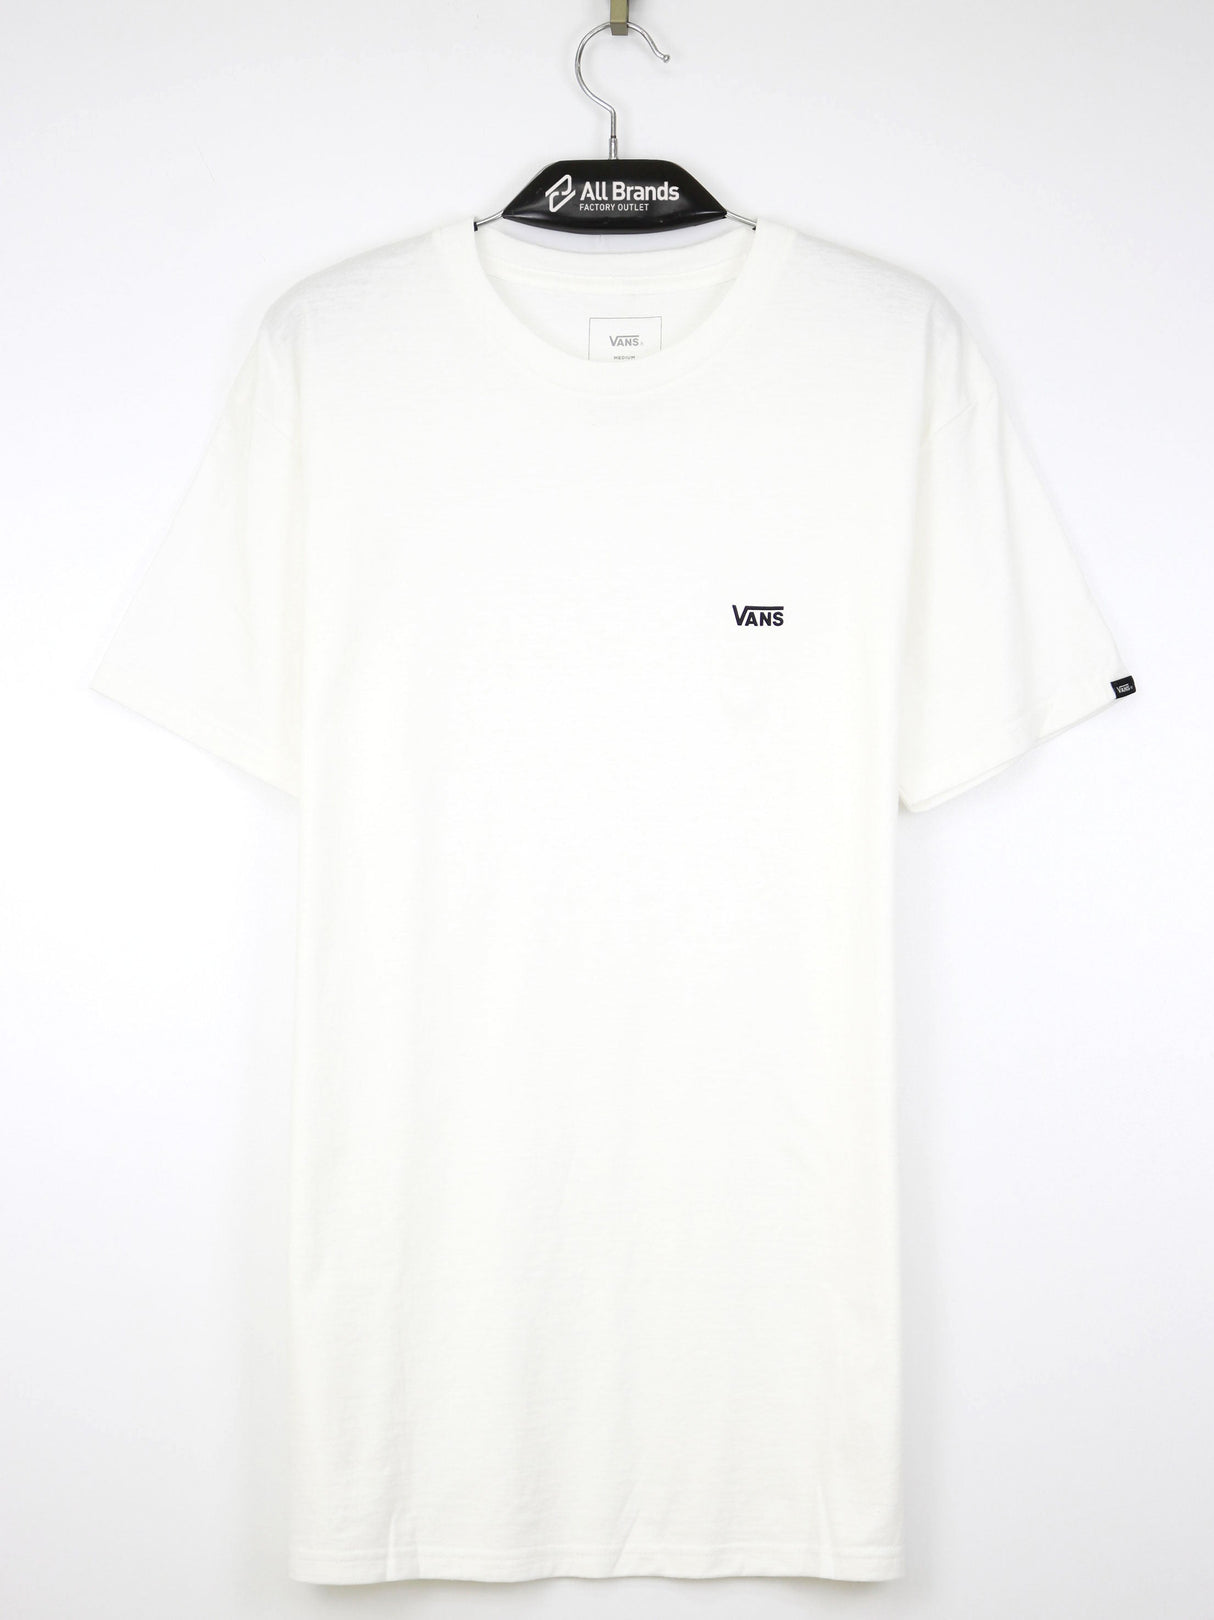 Image for Men's Chest Brand Logo Printed T-Shirt,White